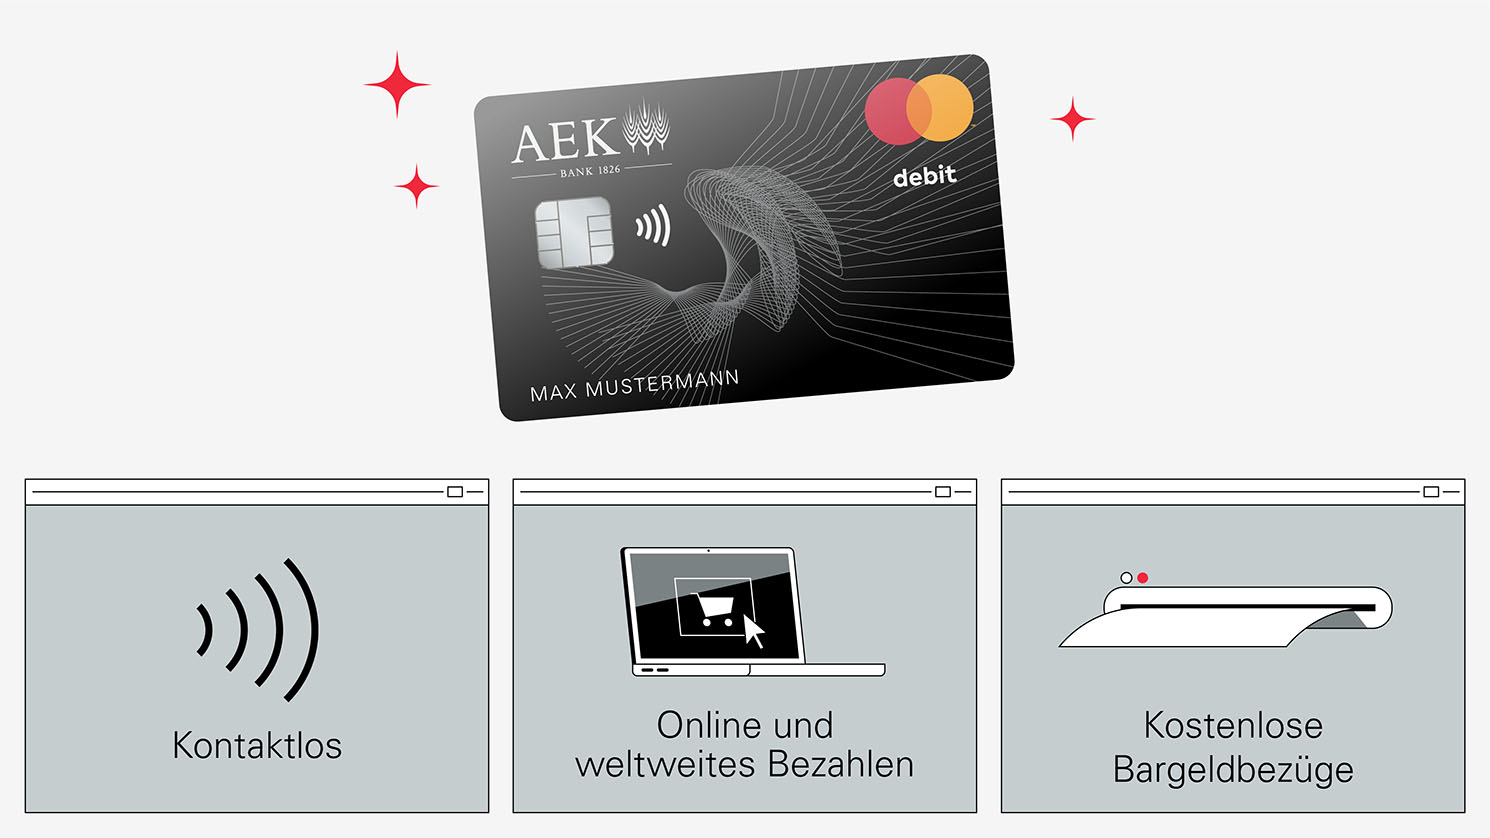 AEK Debit Mastercard, Kontaktlos, Online und weltweites Bezahlen und kostenlose Bargeldbezüge, Animation